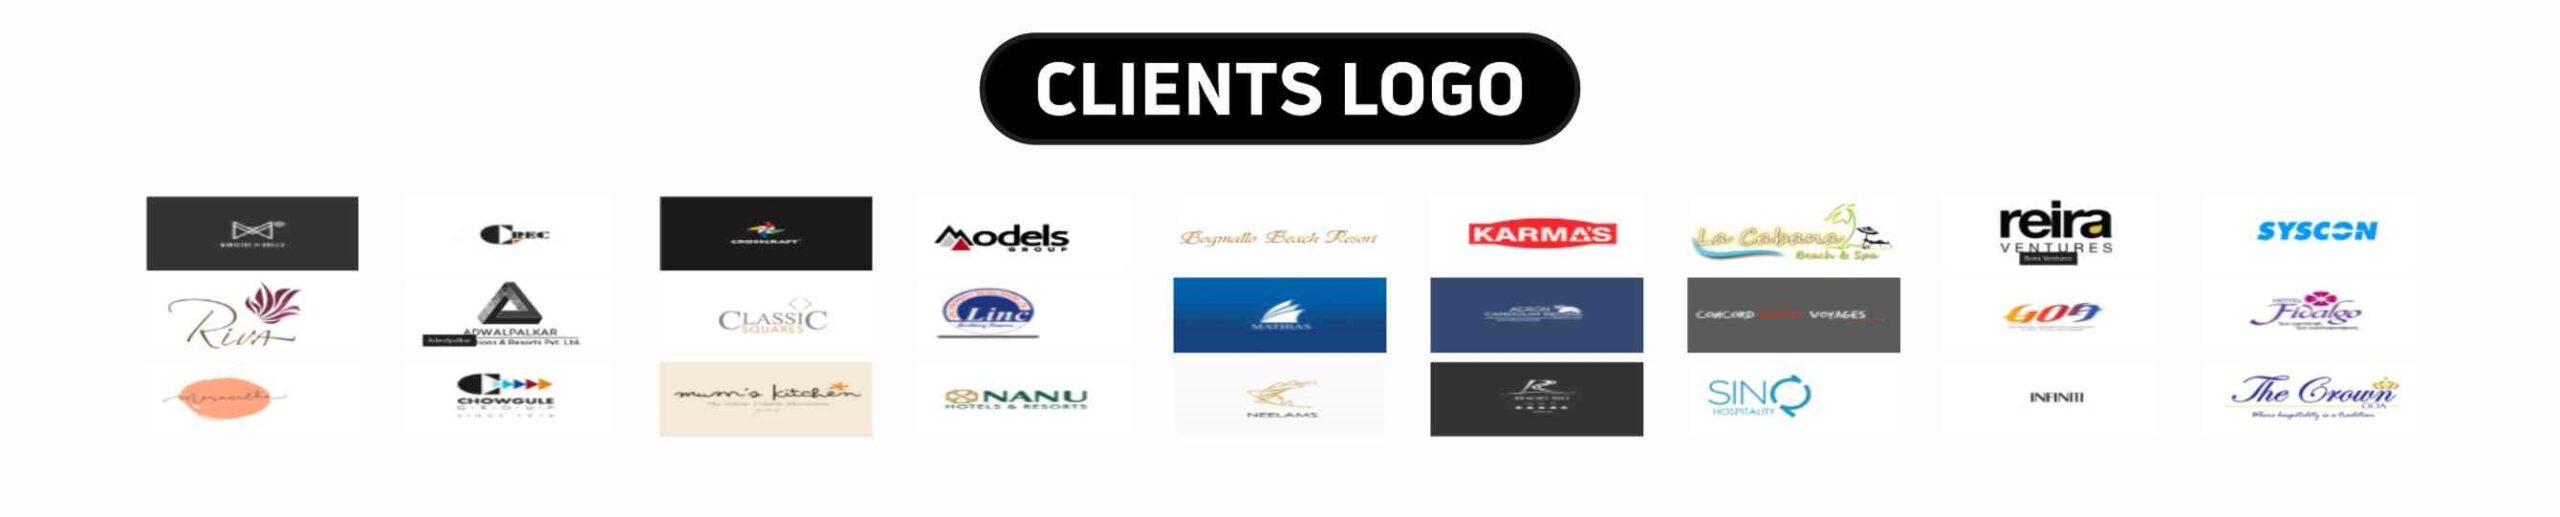 Rubiq Clients Logos